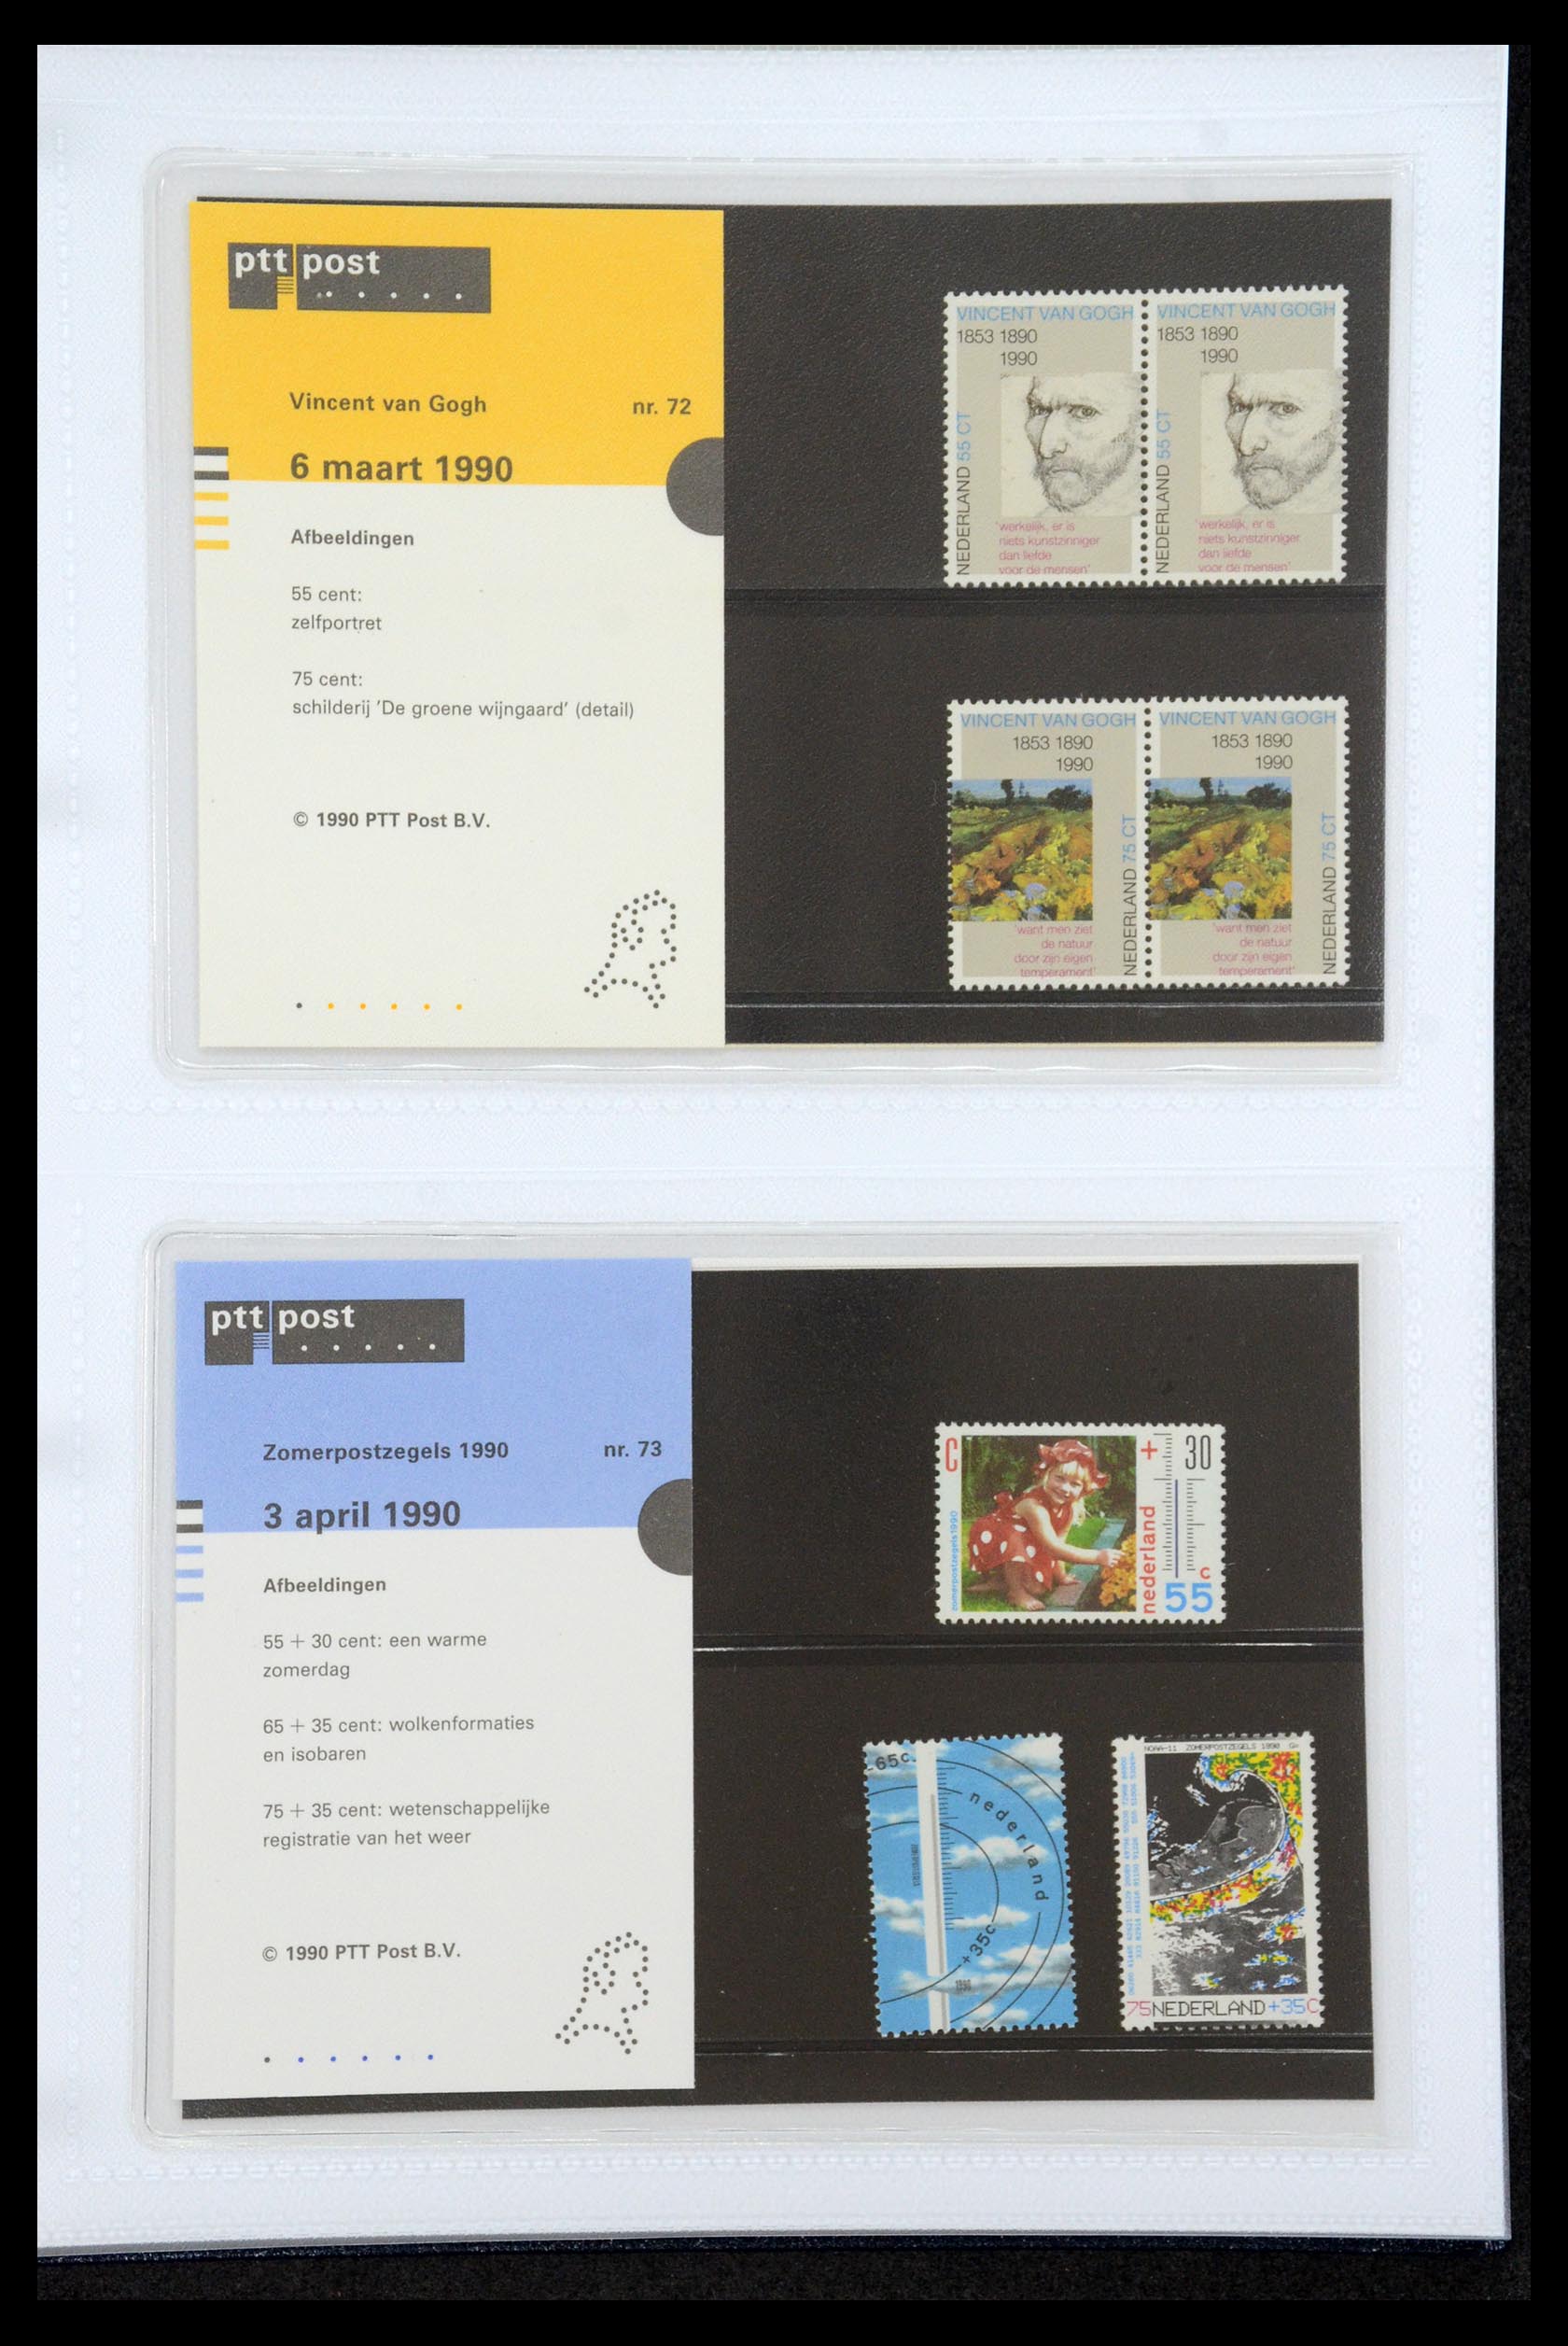 35947 037 - Stamp Collection 35947 Netherlands PTT presentation packs 1982-2019!